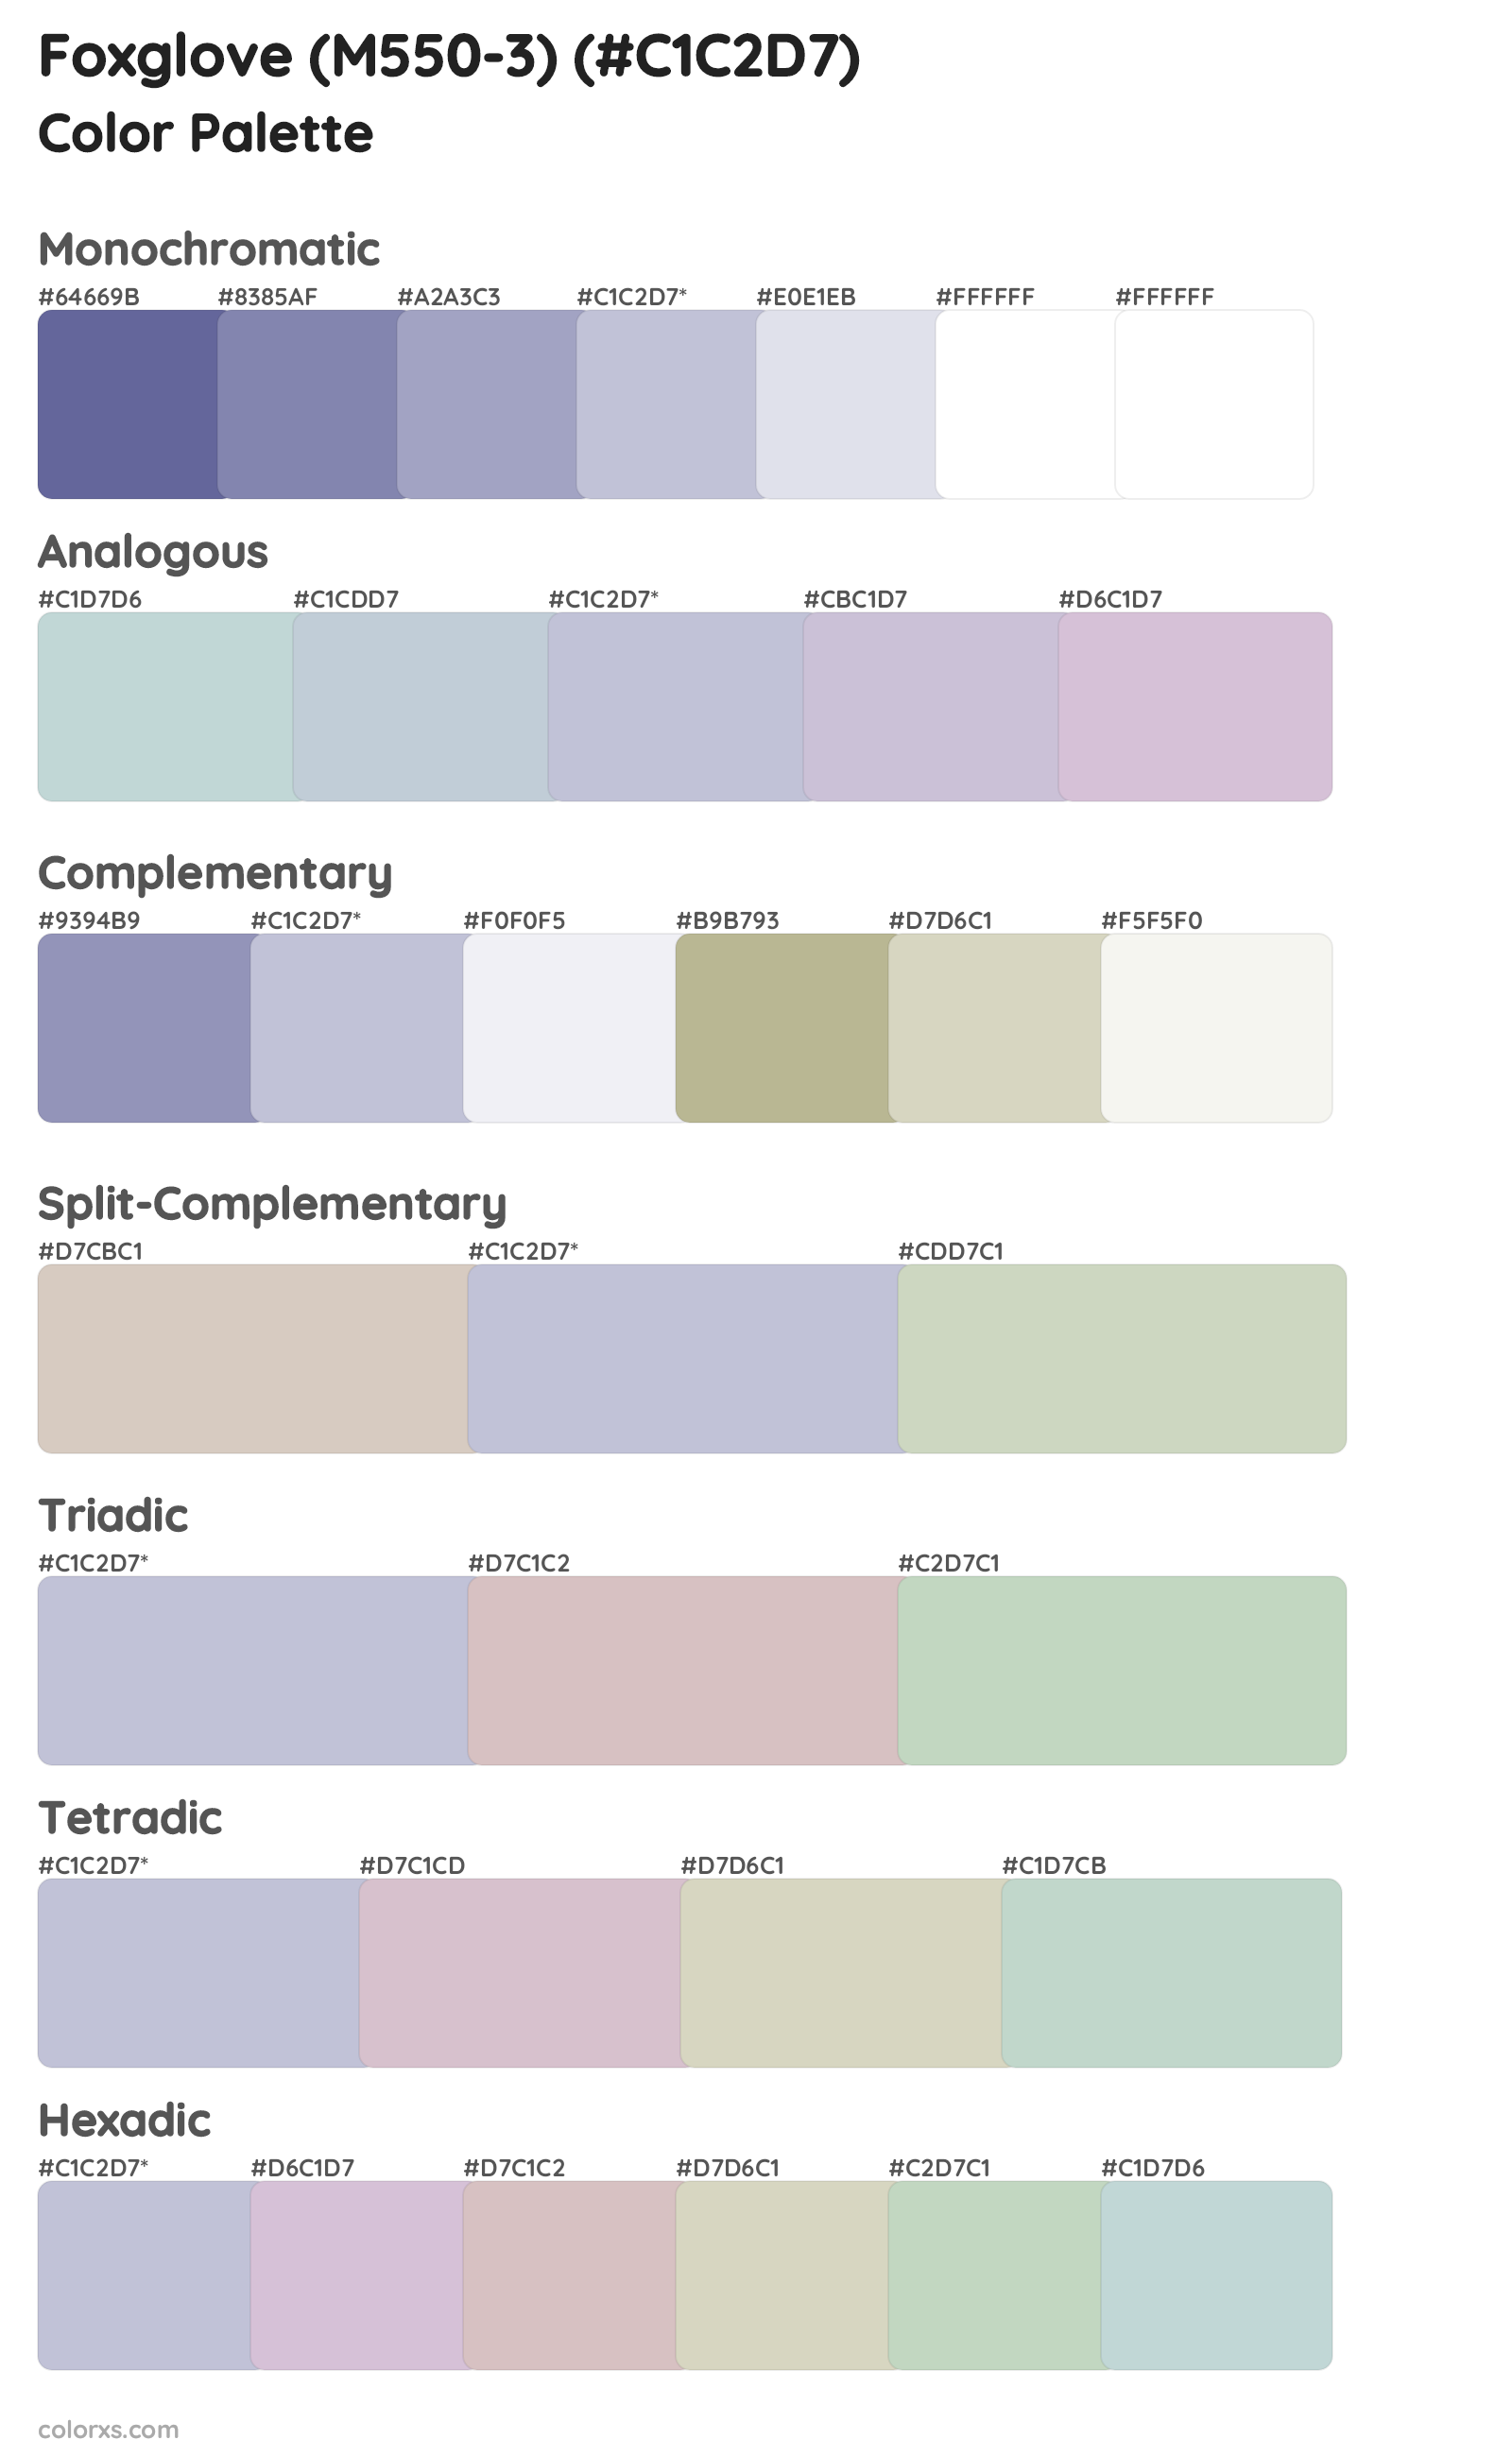 Foxglove (M550-3) Color Scheme Palettes